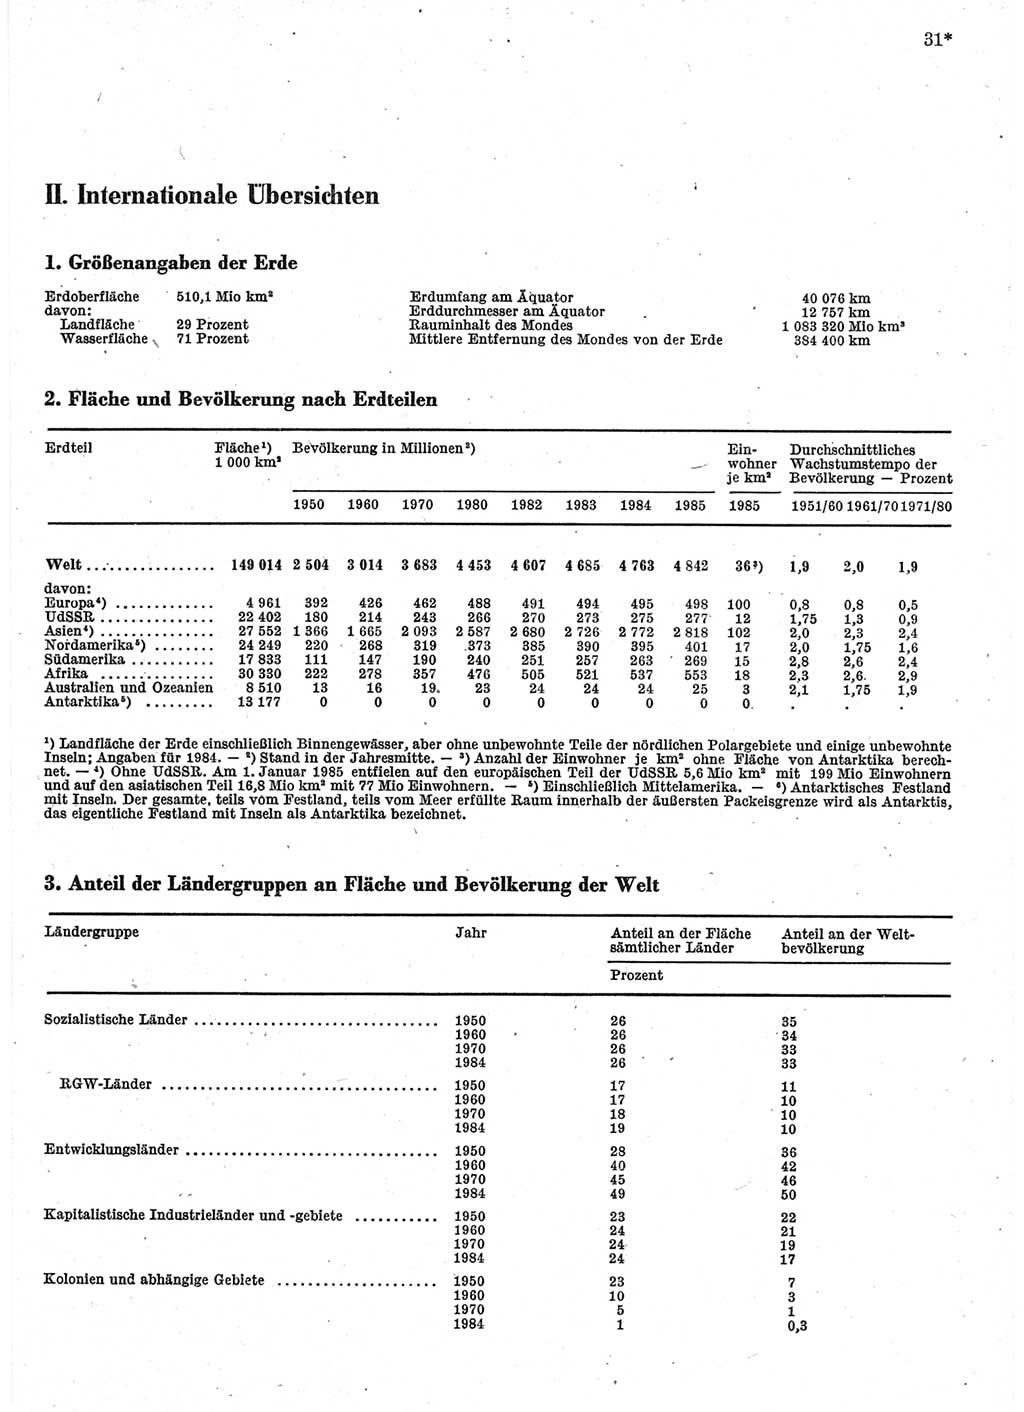 Statistisches Jahrbuch der Deutschen Demokratischen Republik (DDR) 1986, Seite 31 (Stat. Jb. DDR 1986, S. 31)